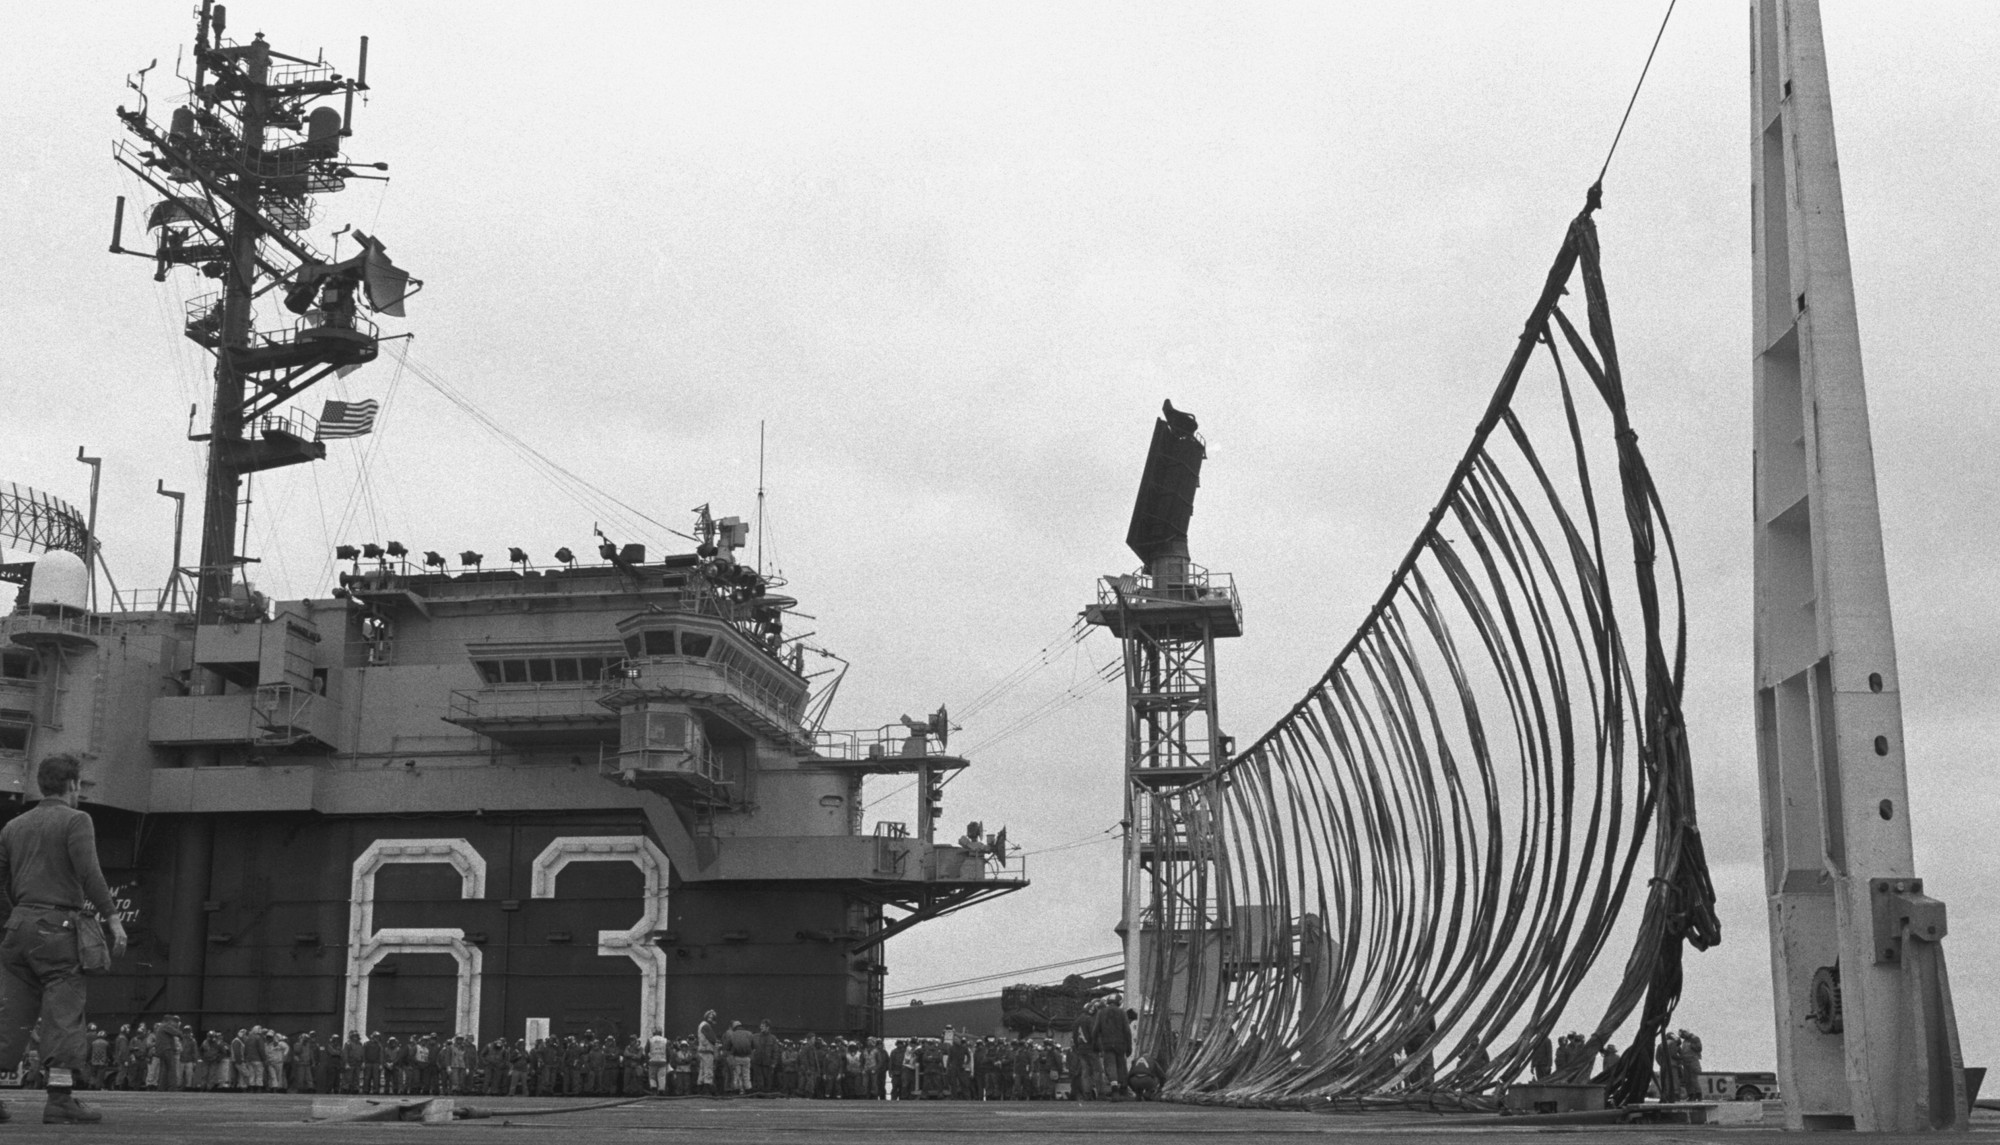 cv-63 uss kitty hawk aircraft carrier 329 emergency landing barricade